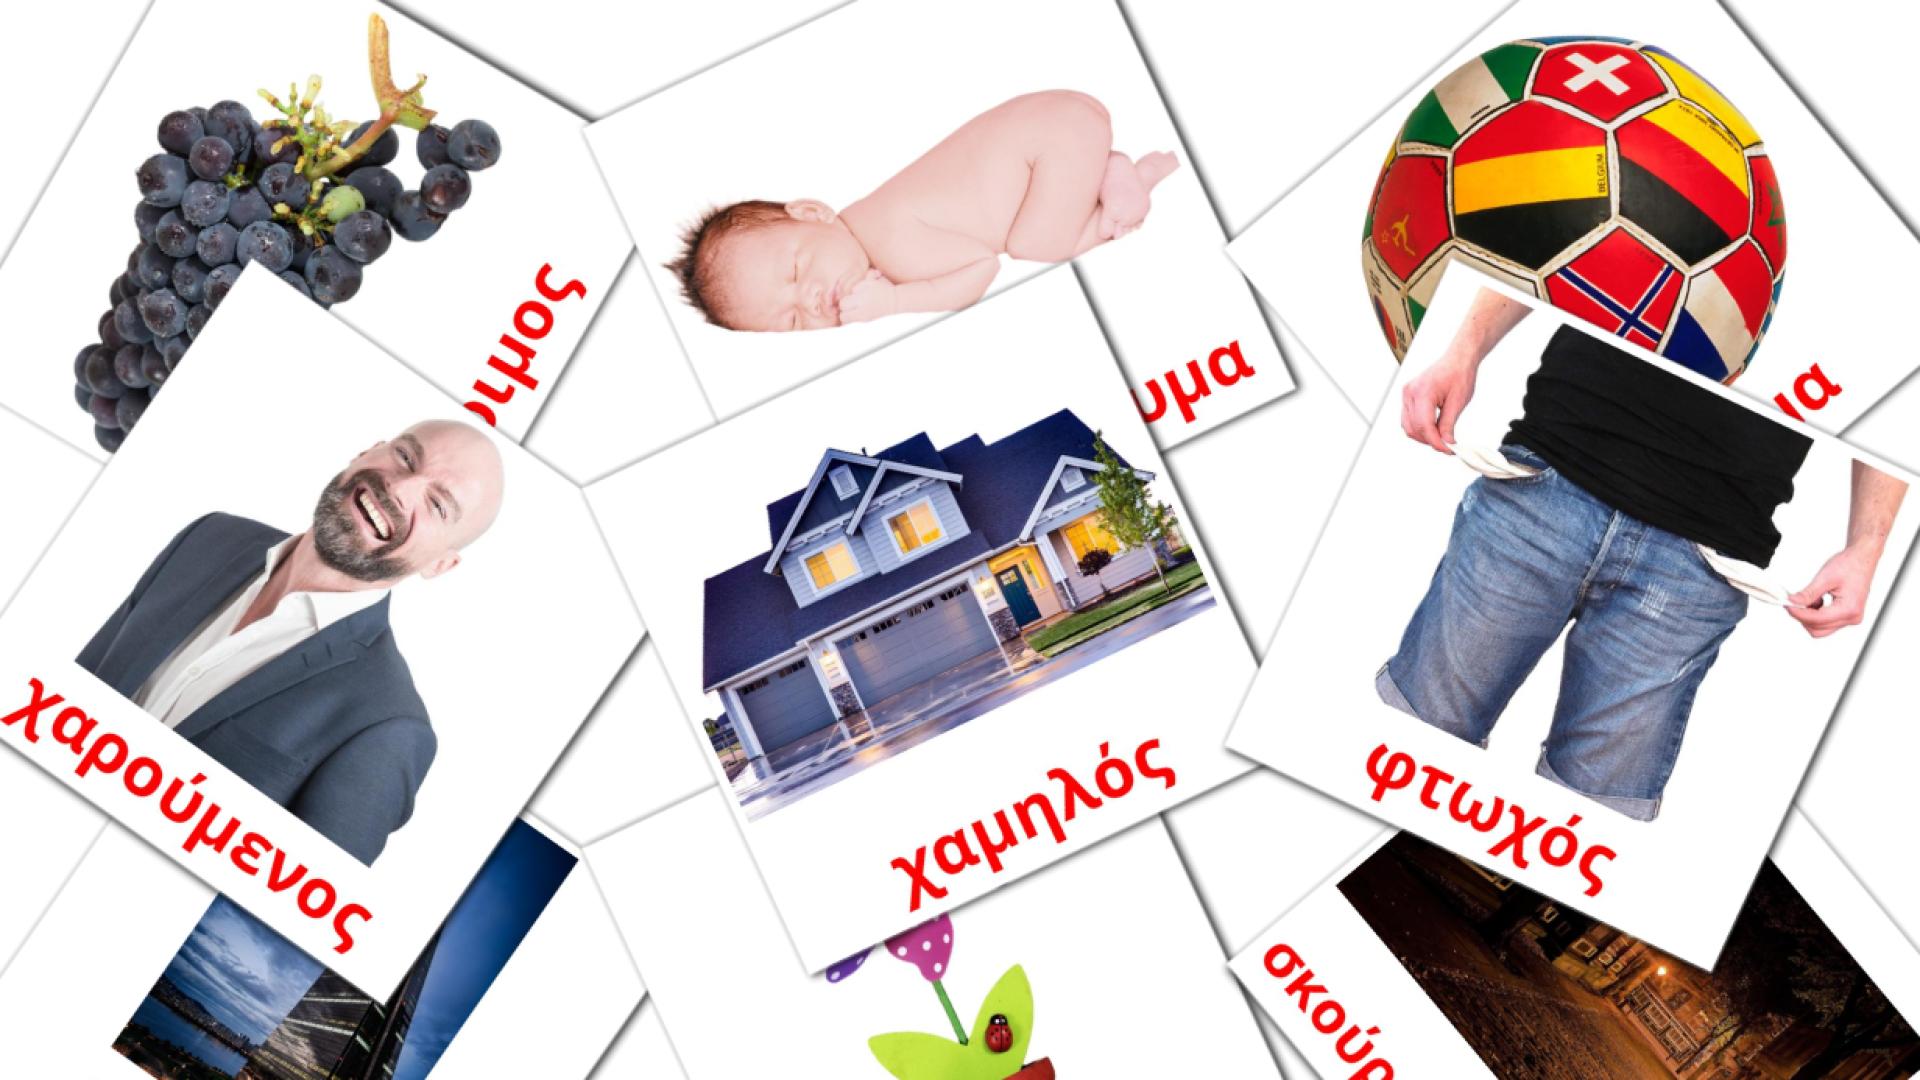 griego tarjetas de vocabulario en επίθετο